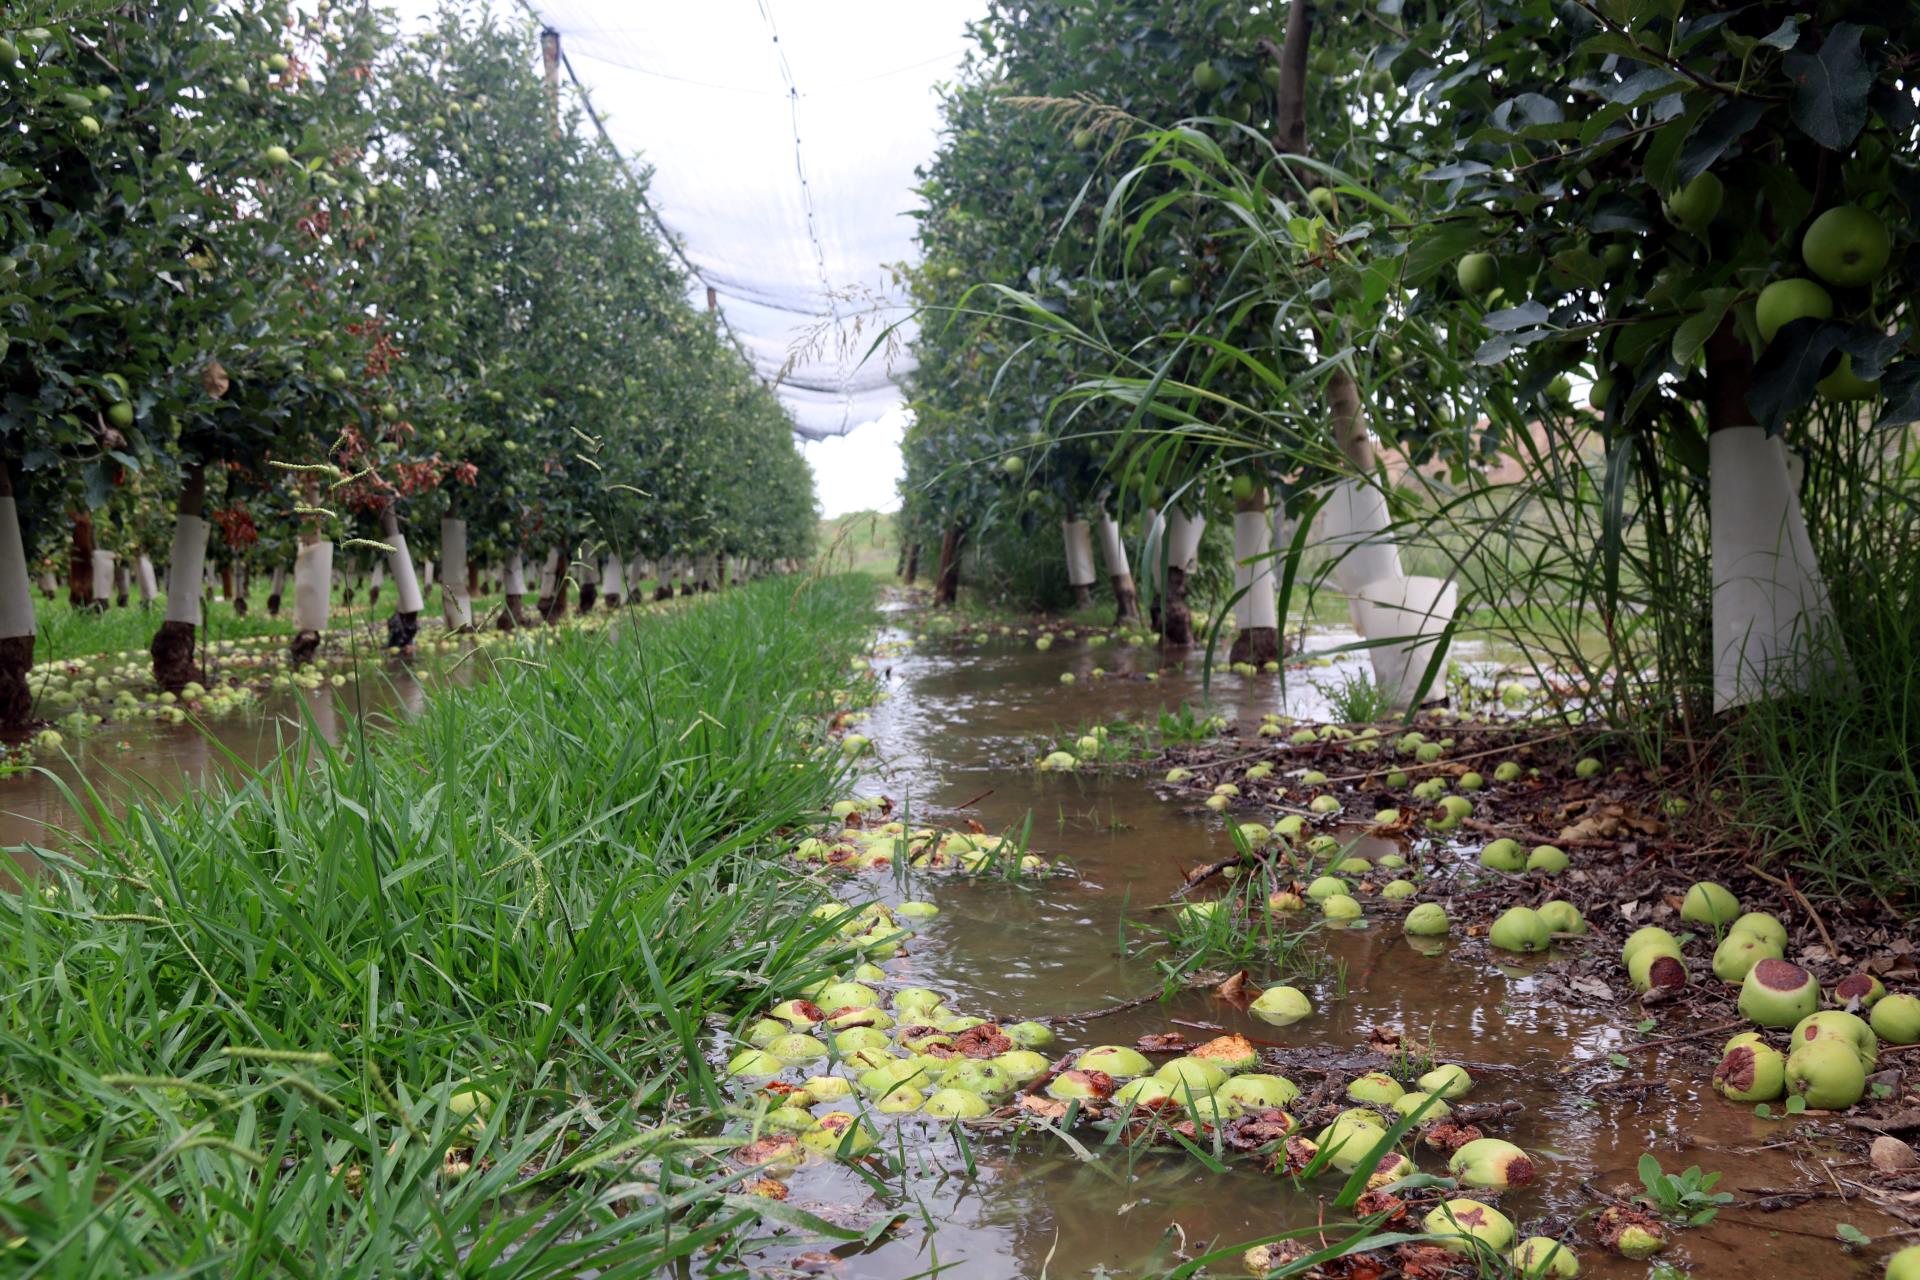 Los productores de fruta del canal de Urgell empiezan a regar los árboles